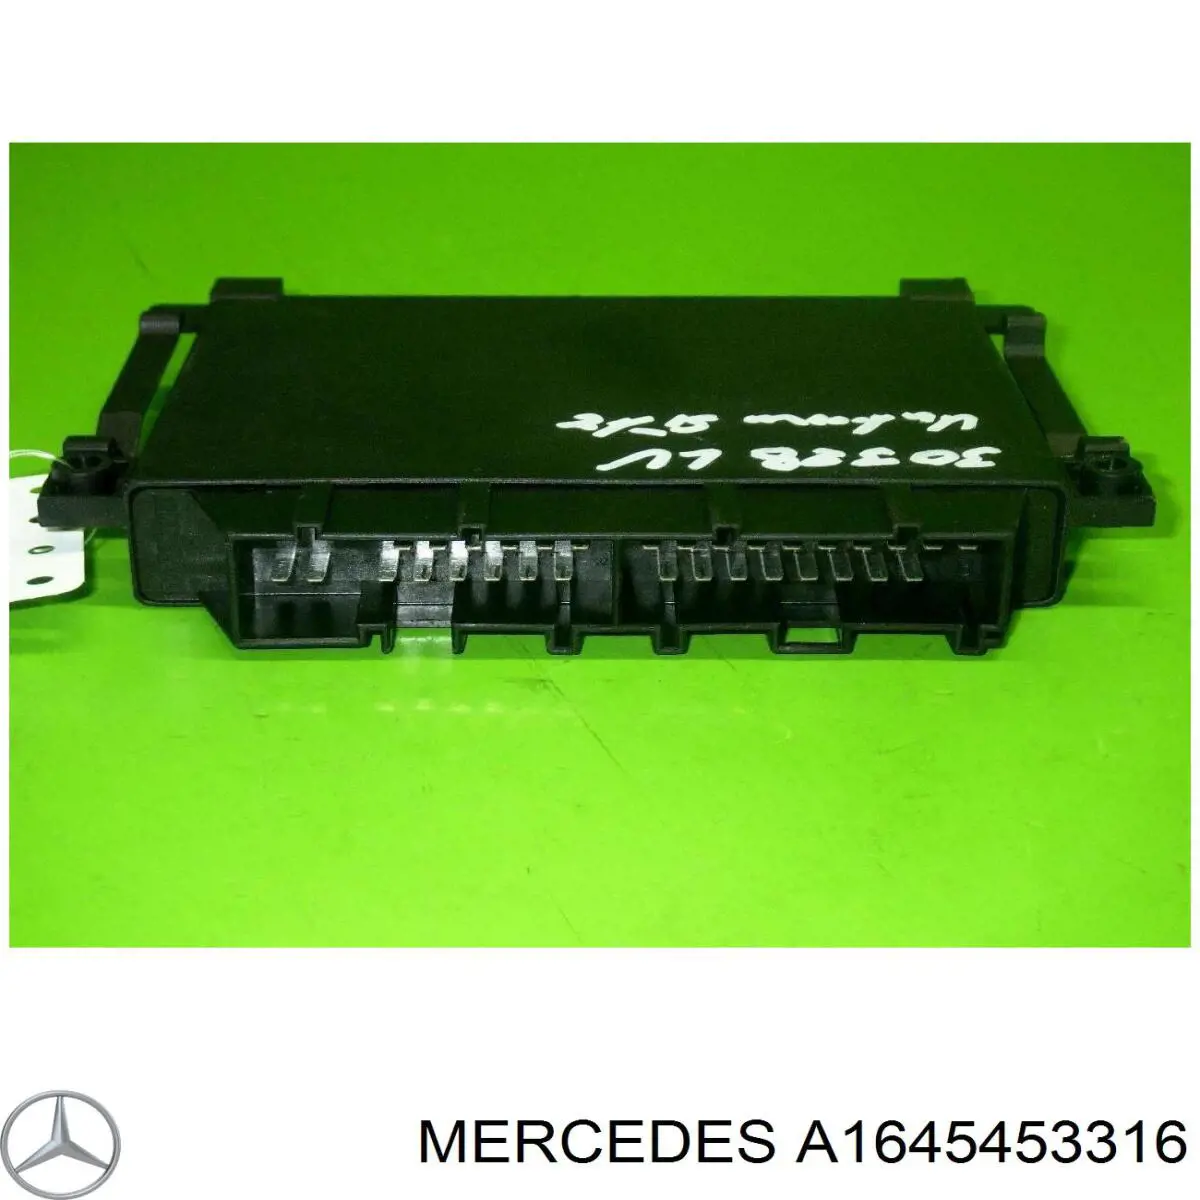 A1645453316 Mercedes unidad de control, auxiliar de aparcamiento